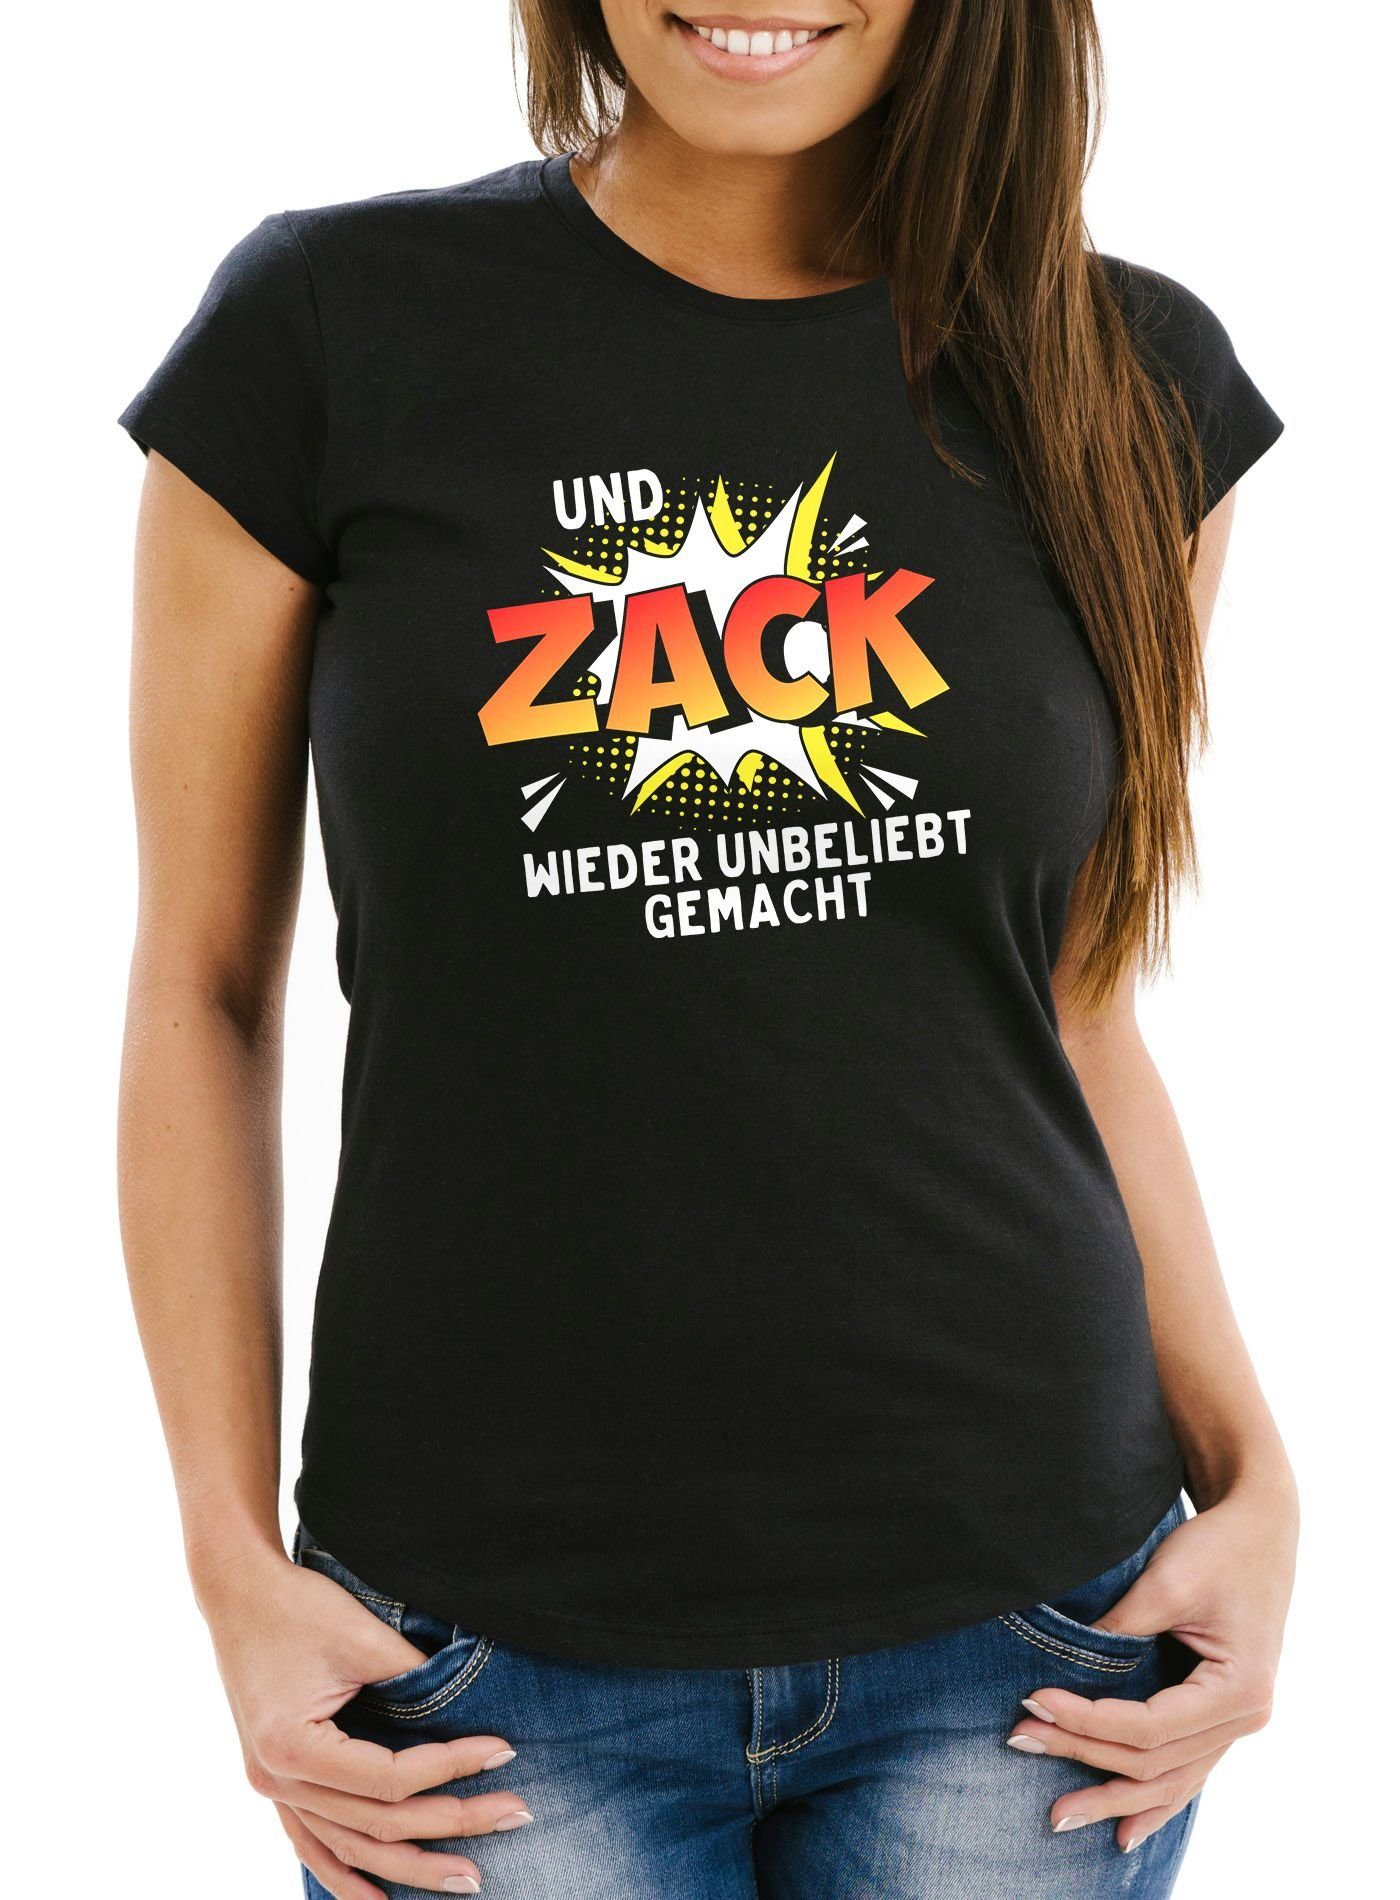 Print-Shirt Damen T-Shirt Und ZACK wieder unbeliebt gemacht Spruch Slim Fit Moonworks® mit Print